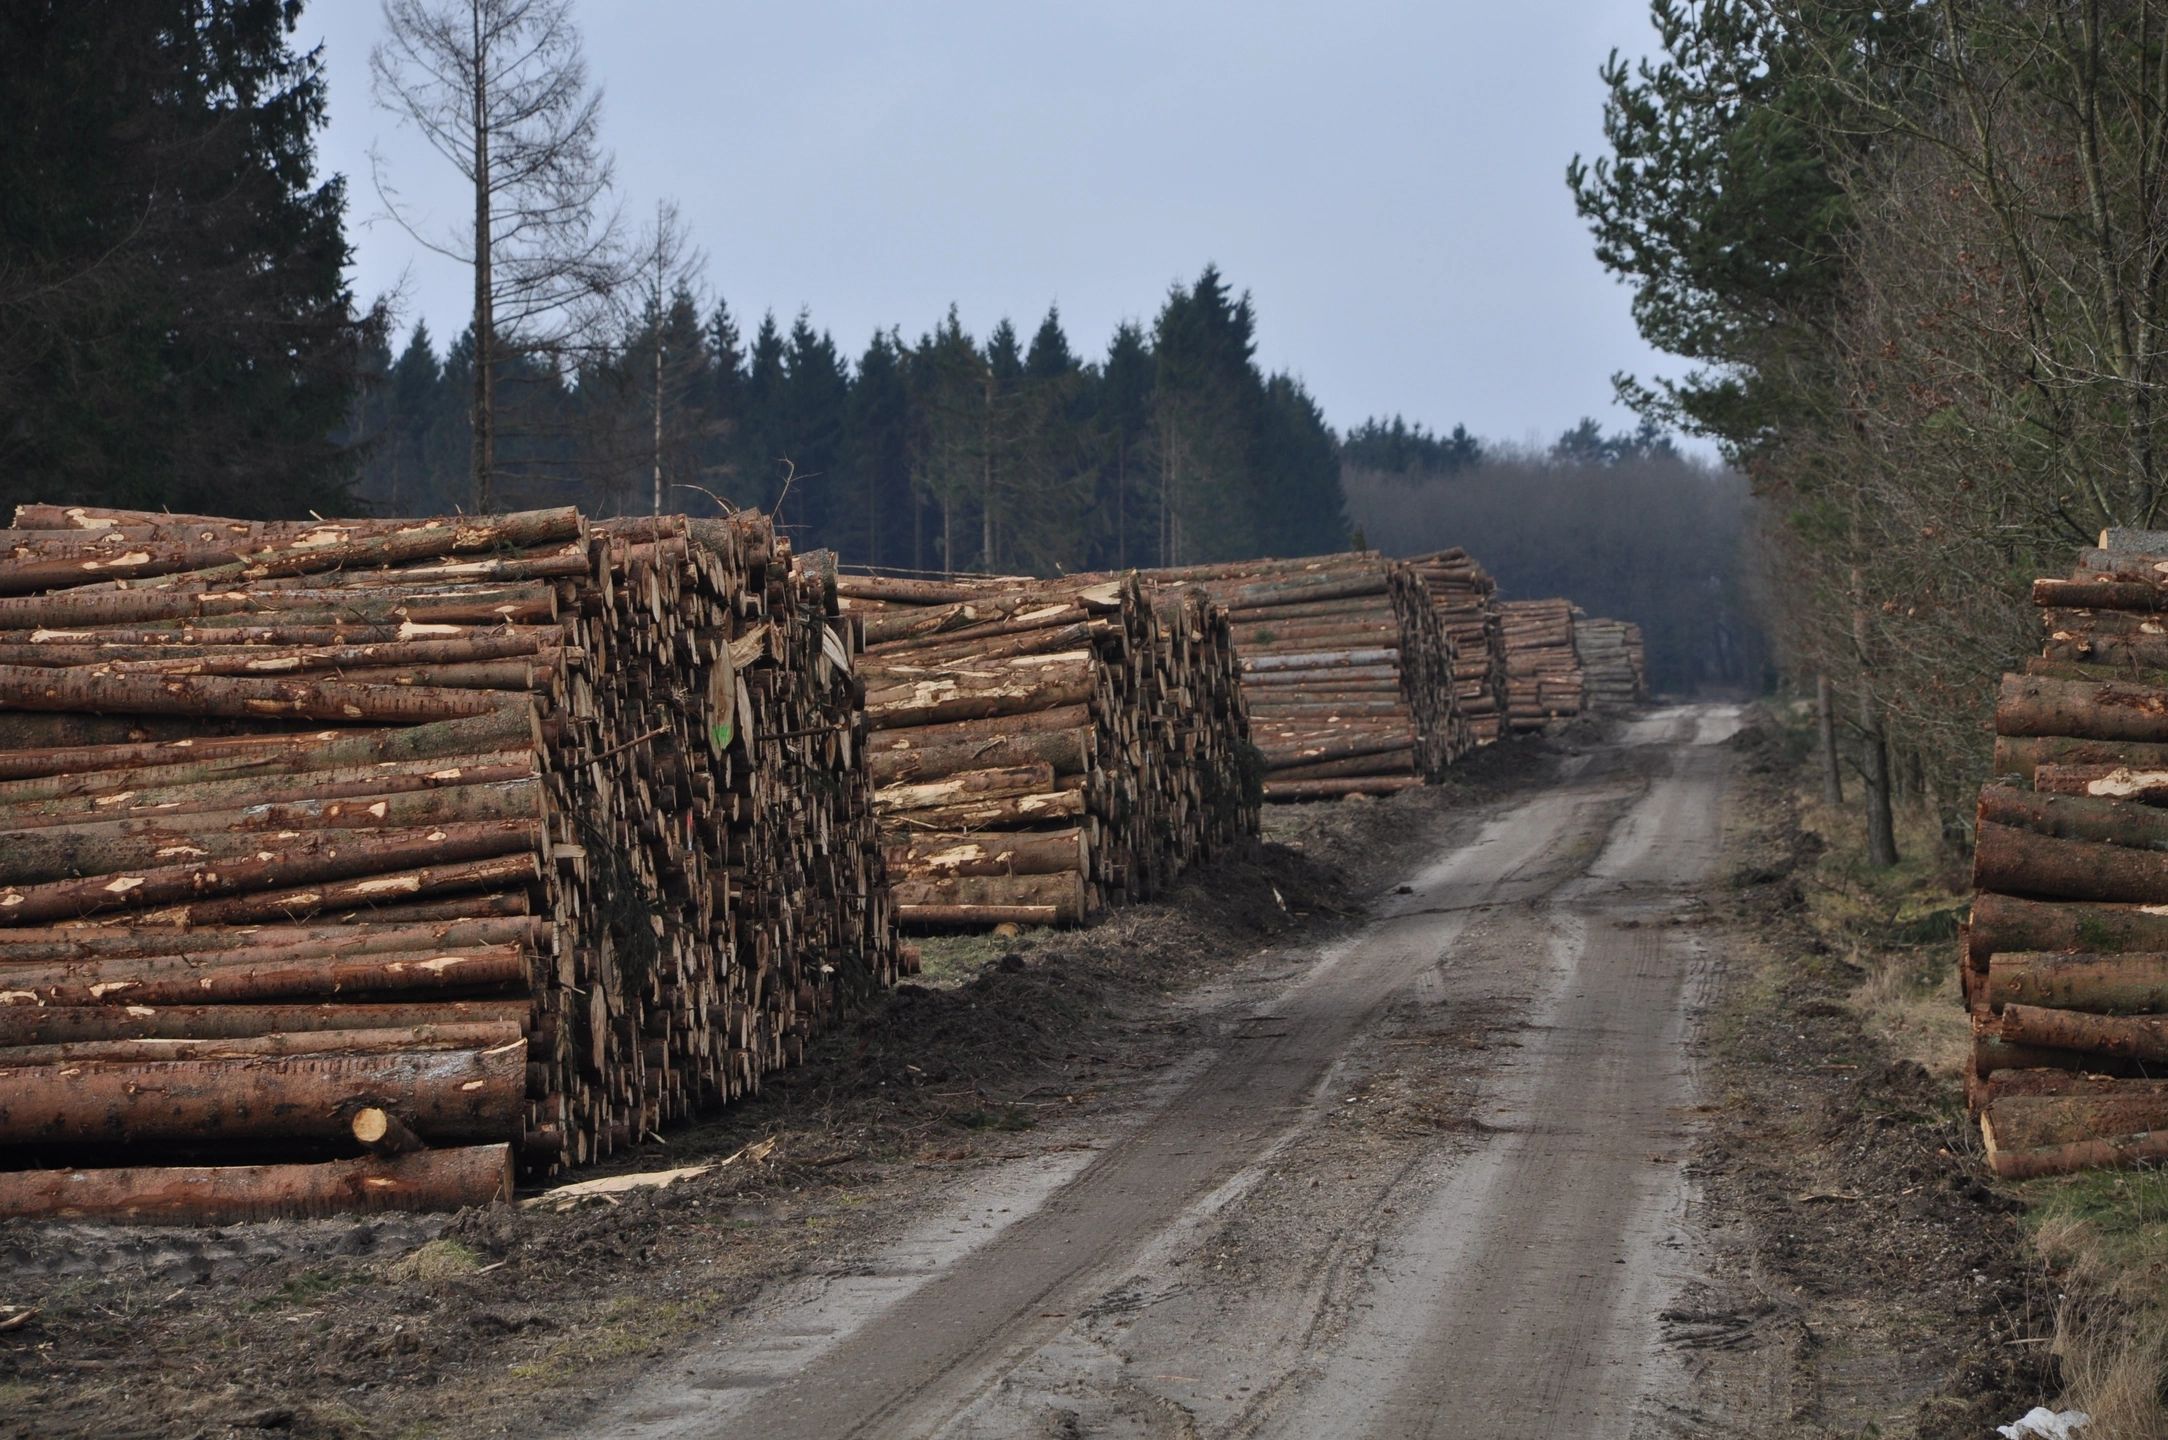 Strategi för Sveriges nationella skogsprogram